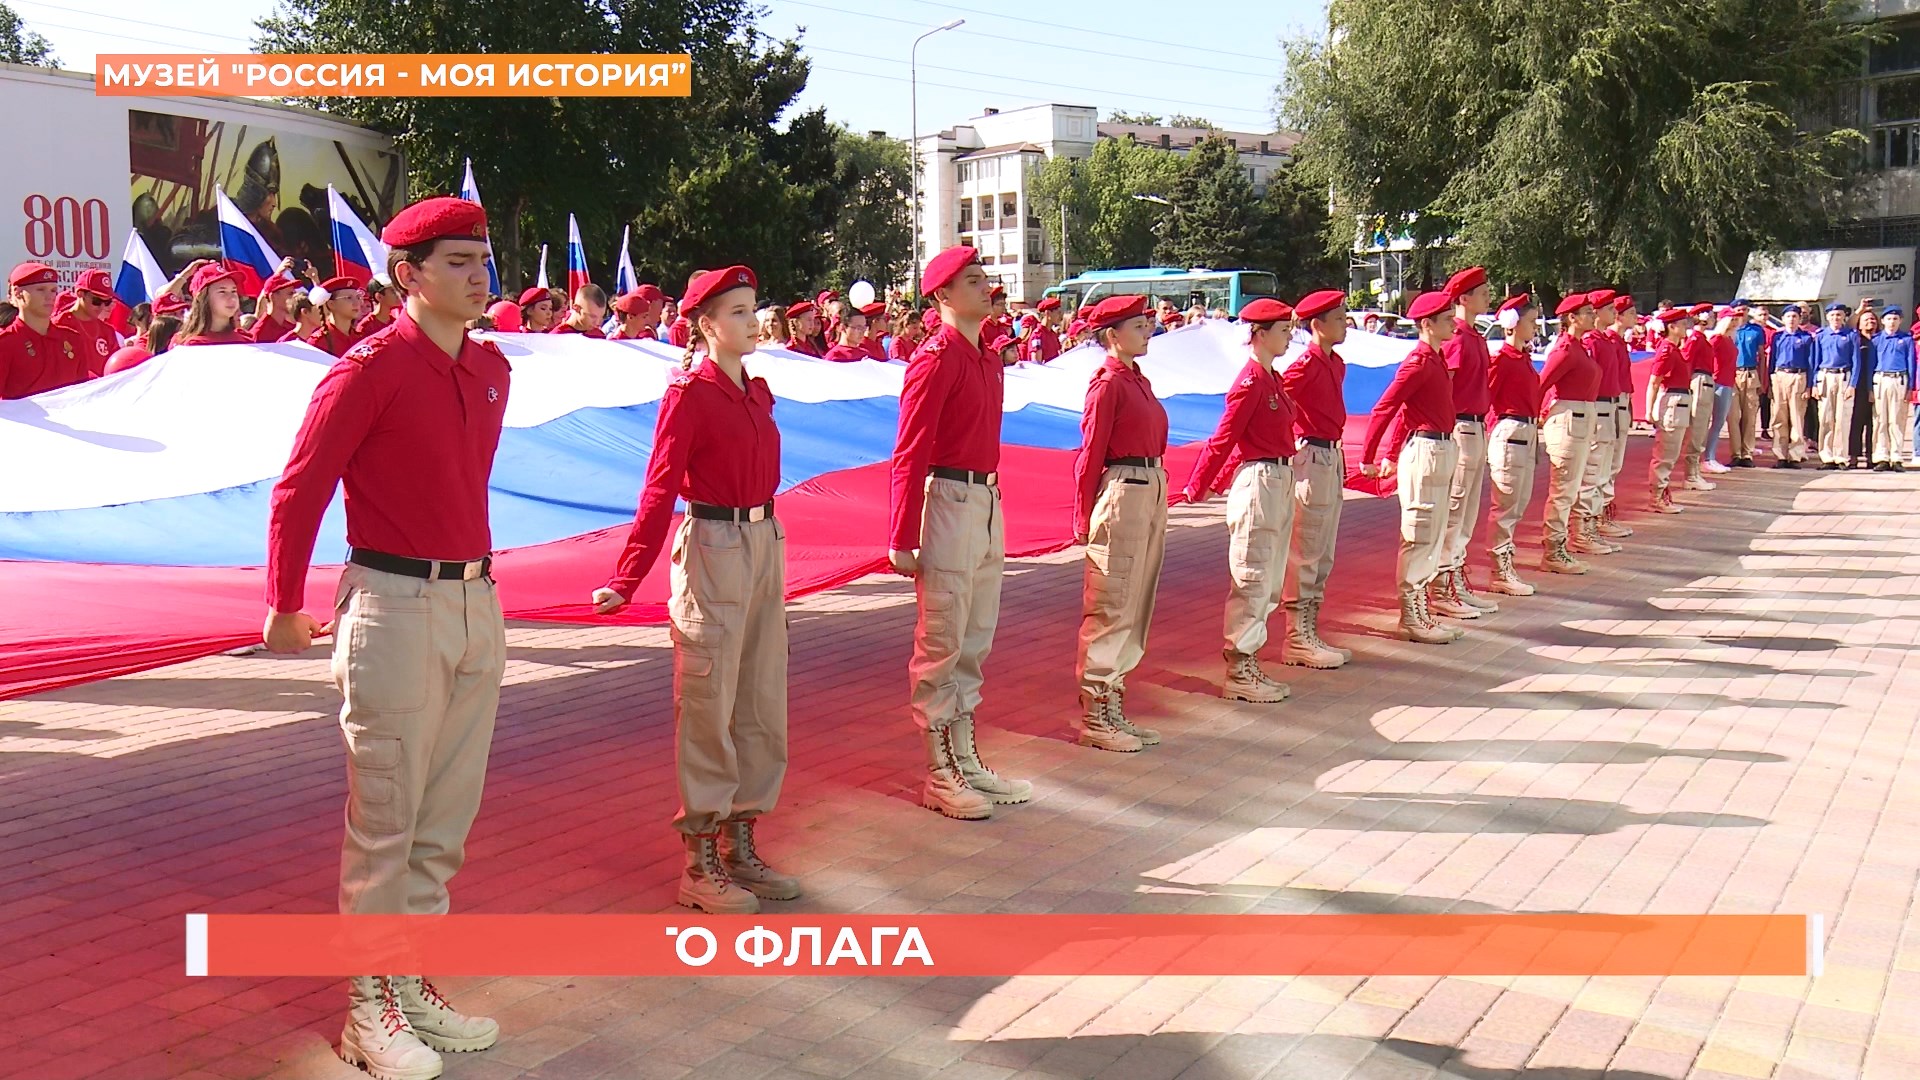 Триколор торжественно подняли на площадке перед музеем «Россия — моя история»